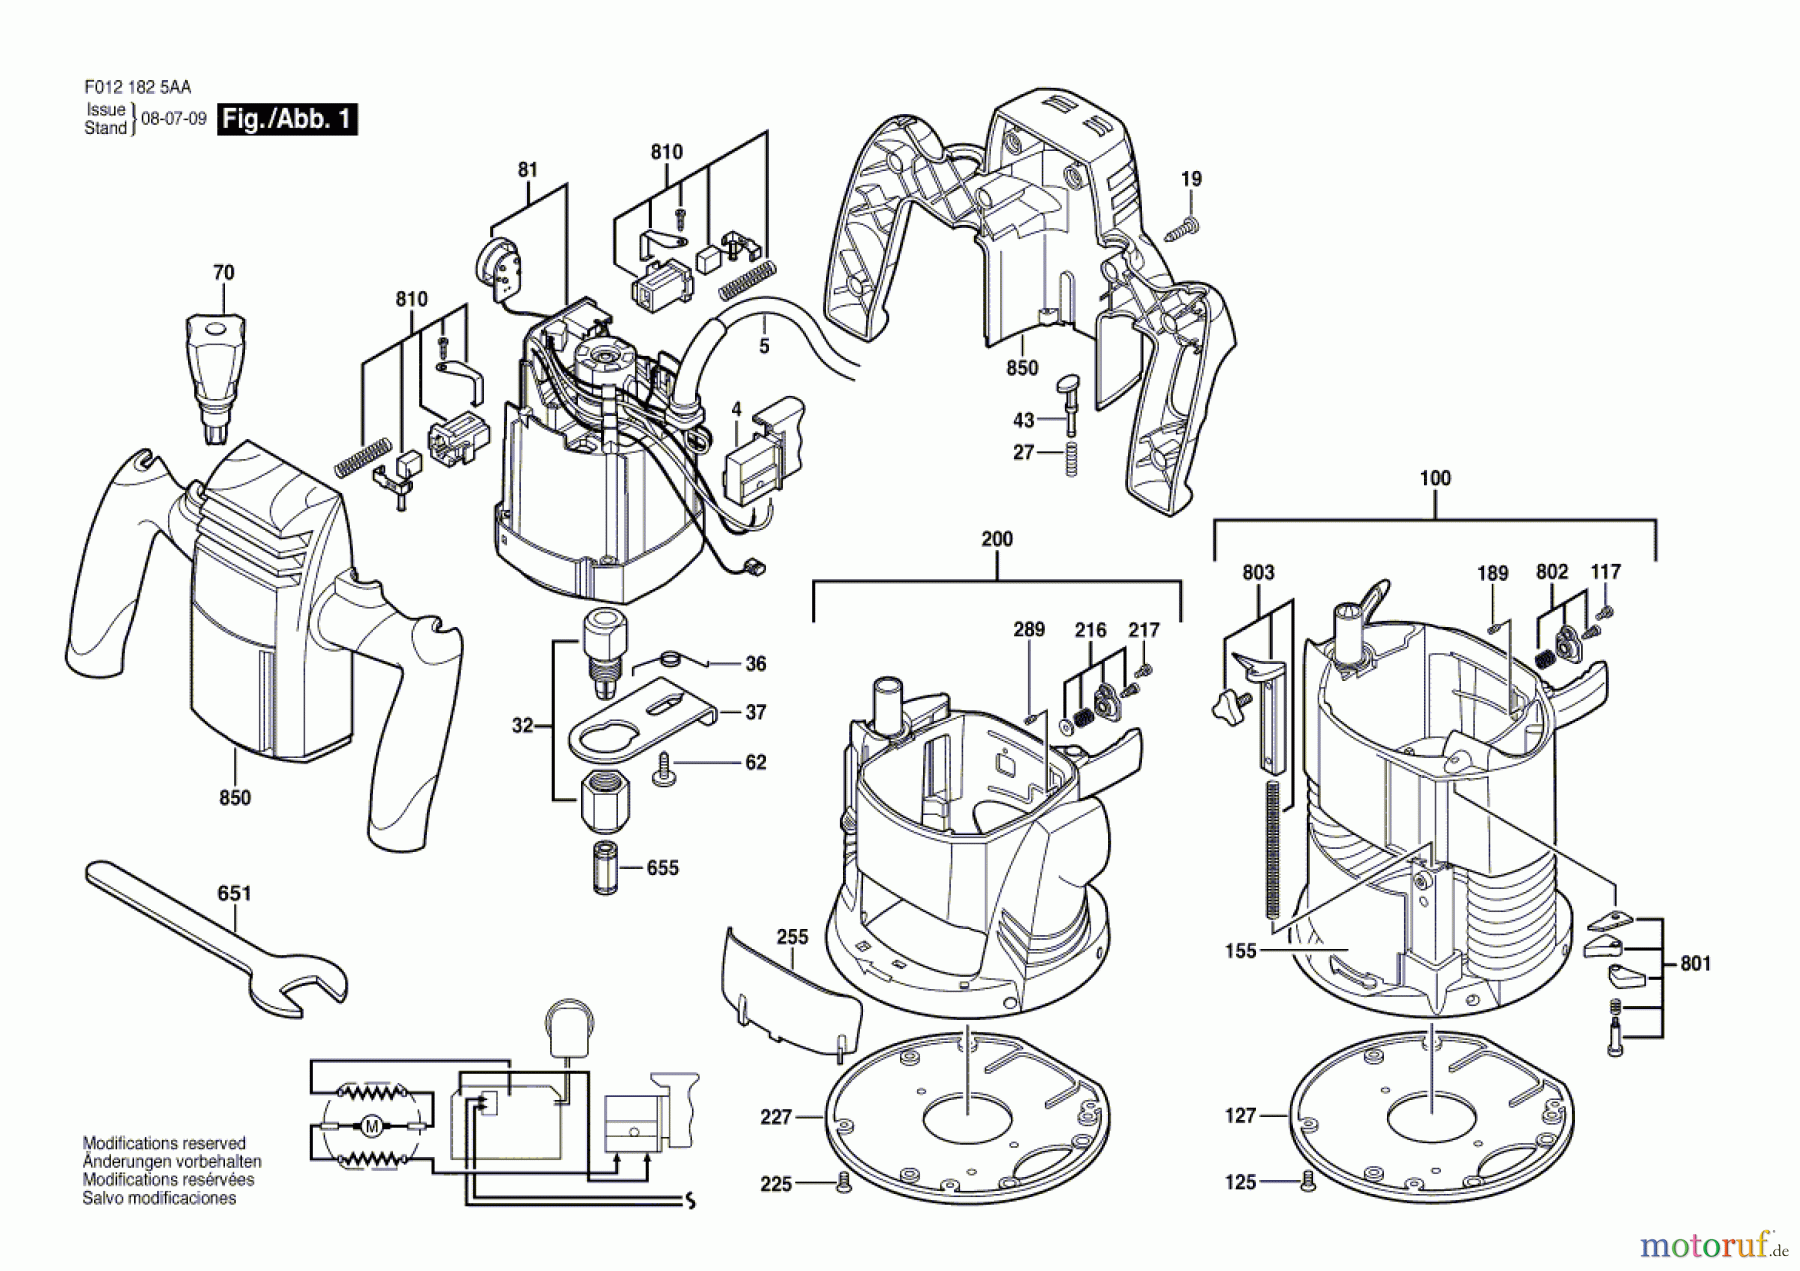  Bosch Werkzeug Motorregeleinheit 1825 Seite 1